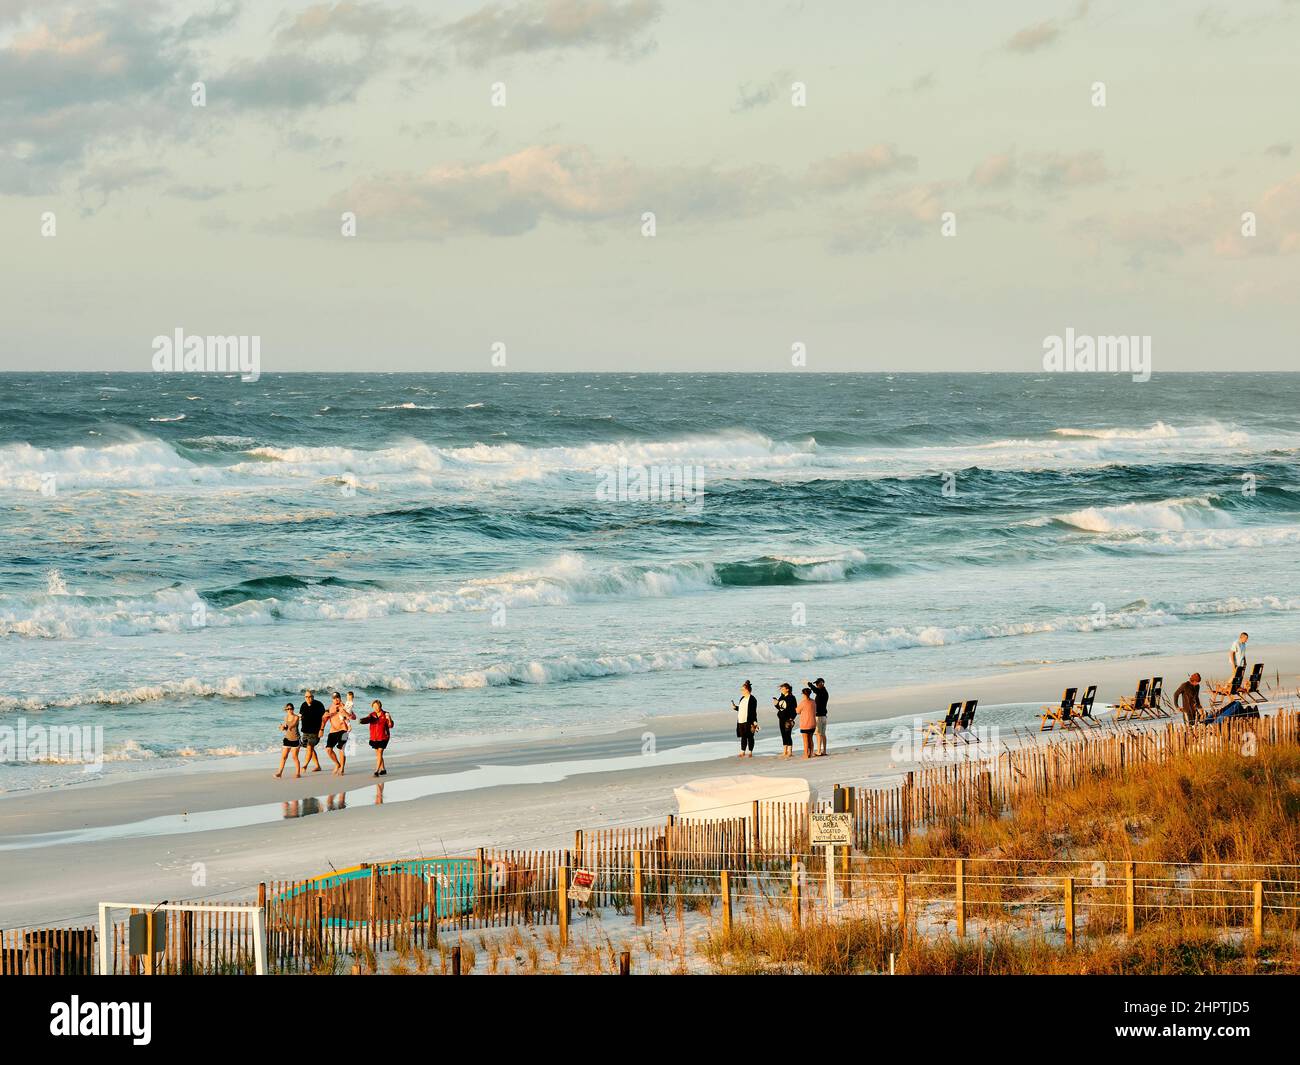 La gente y las familias disfrutan de la playa de arena blanca y las playas de Florida Panhandle, Golfo de México, en Destin Florida, Estados Unidos. Foto de stock